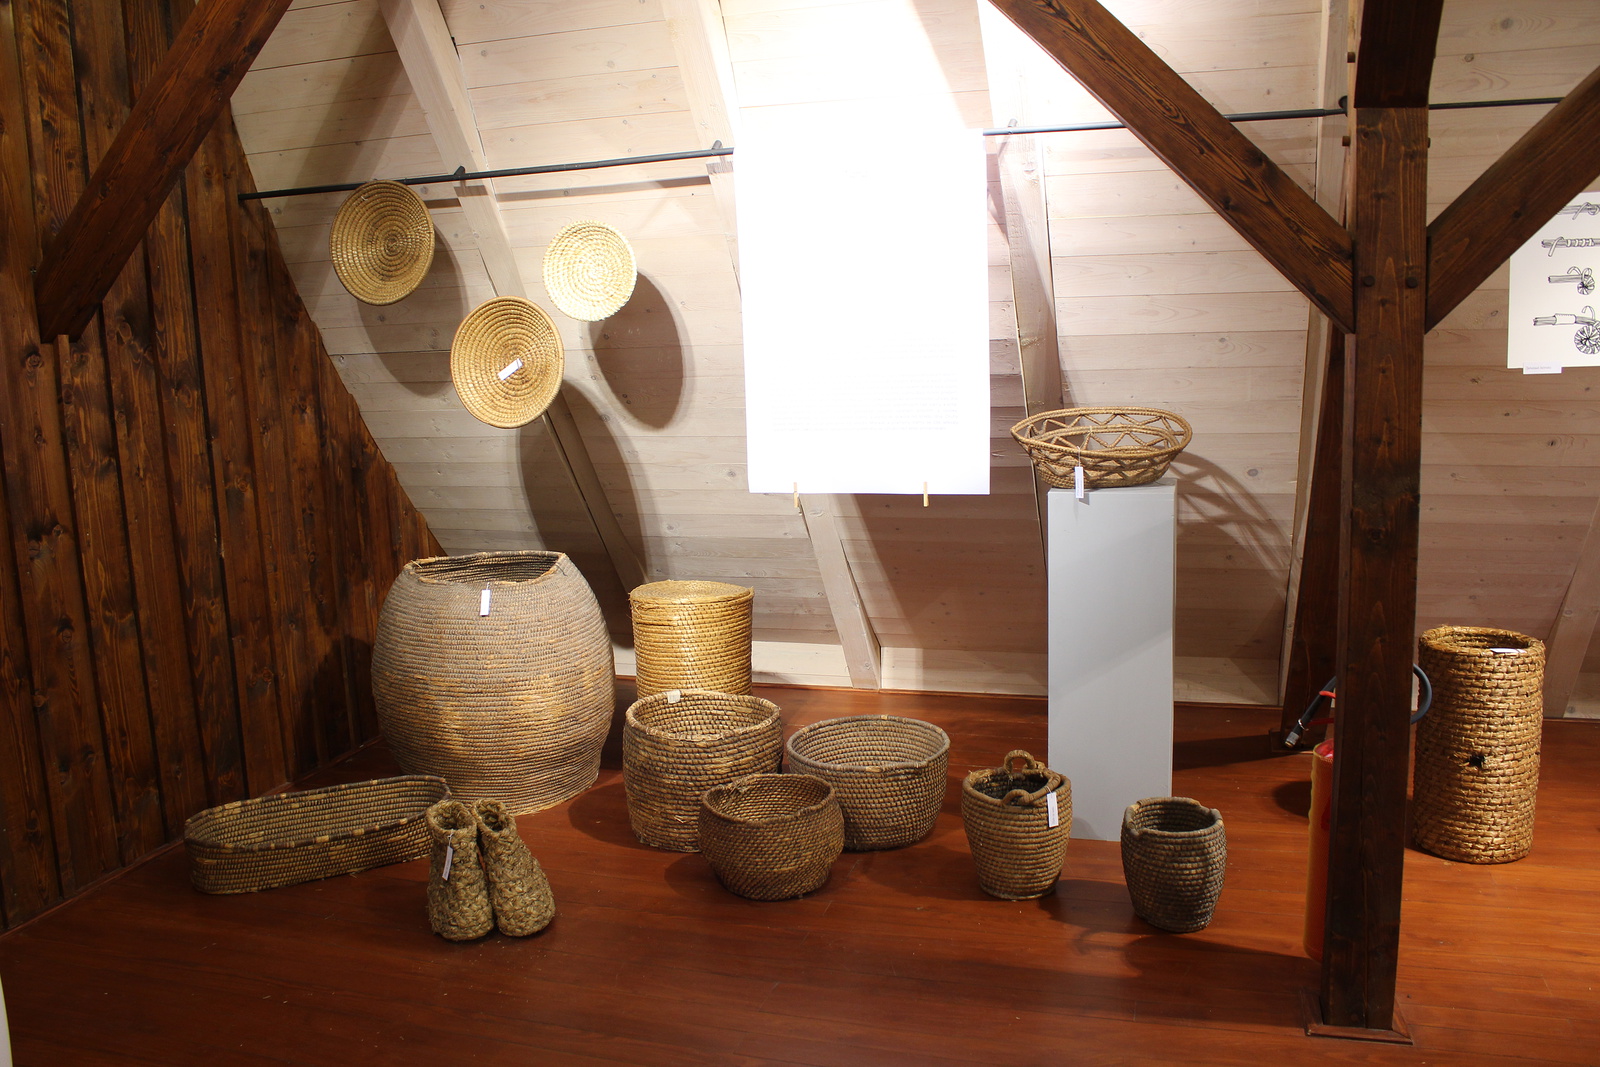 FOTO: Ať žije sláma! Muzeum ukáže, co všechno se z ní dalo vyrobit -  Liberecký deník